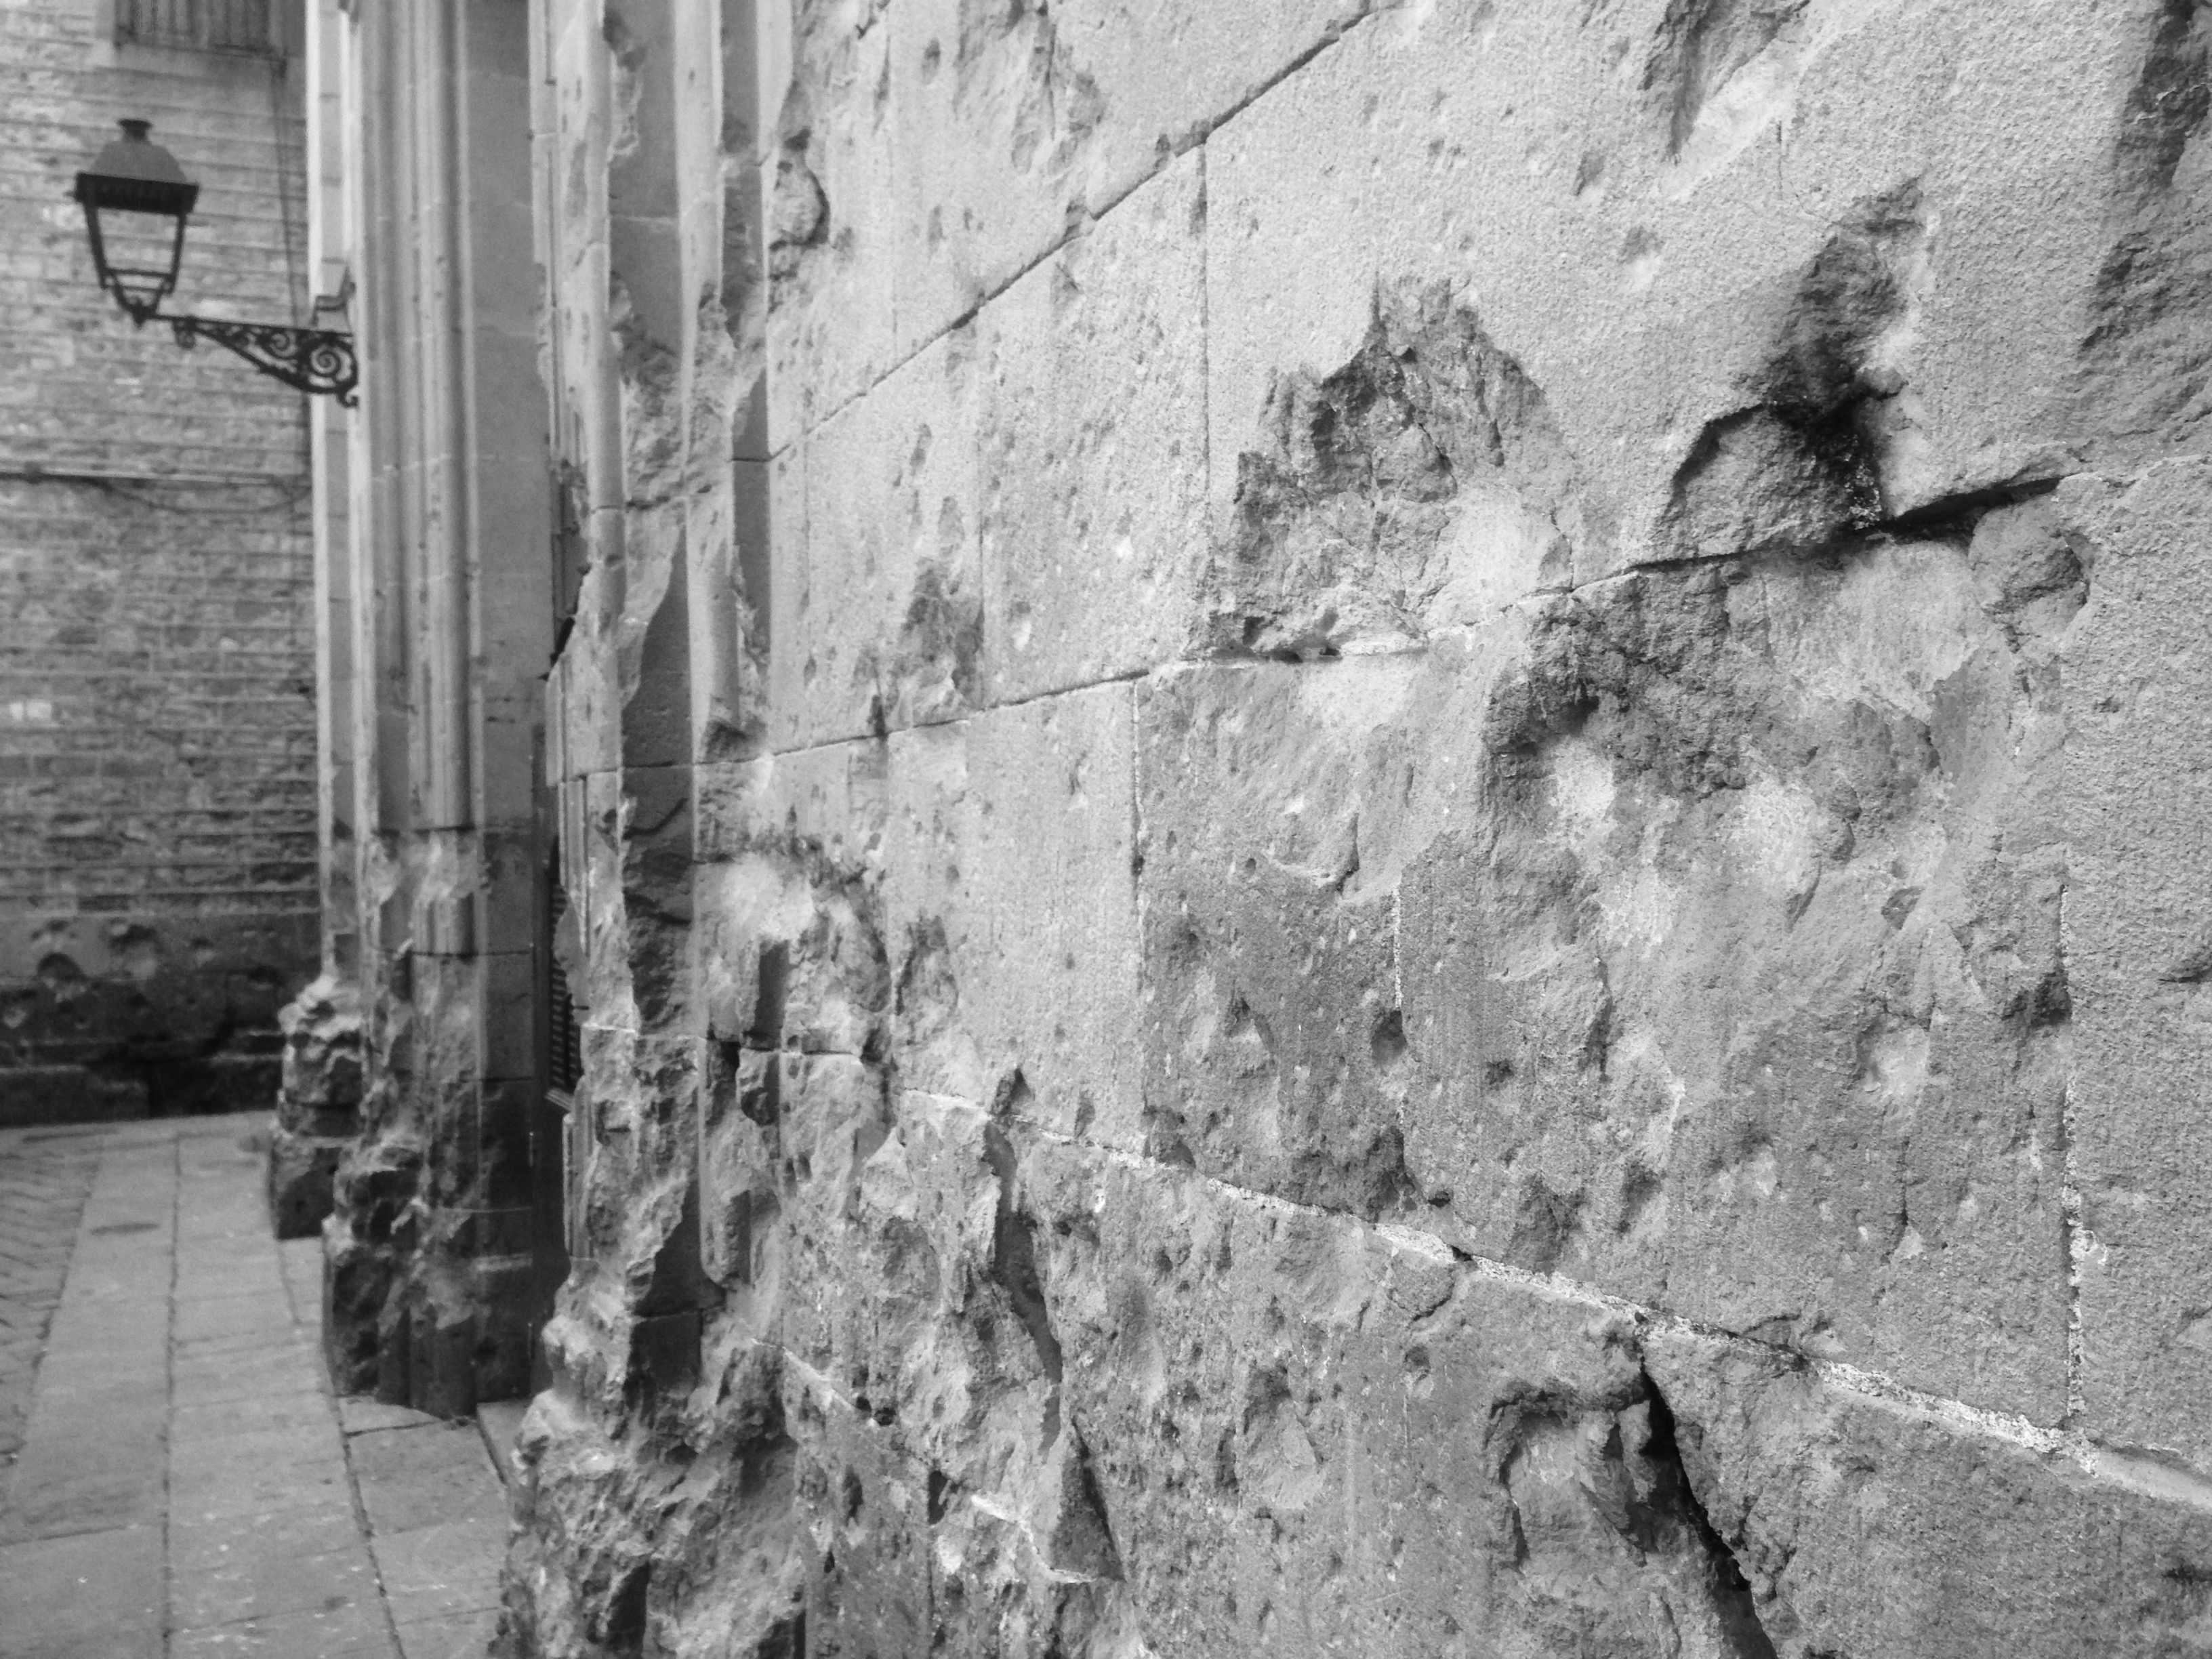 Las 'cicatrices' en la fachada de la iglesia de Sant Felip Neri.